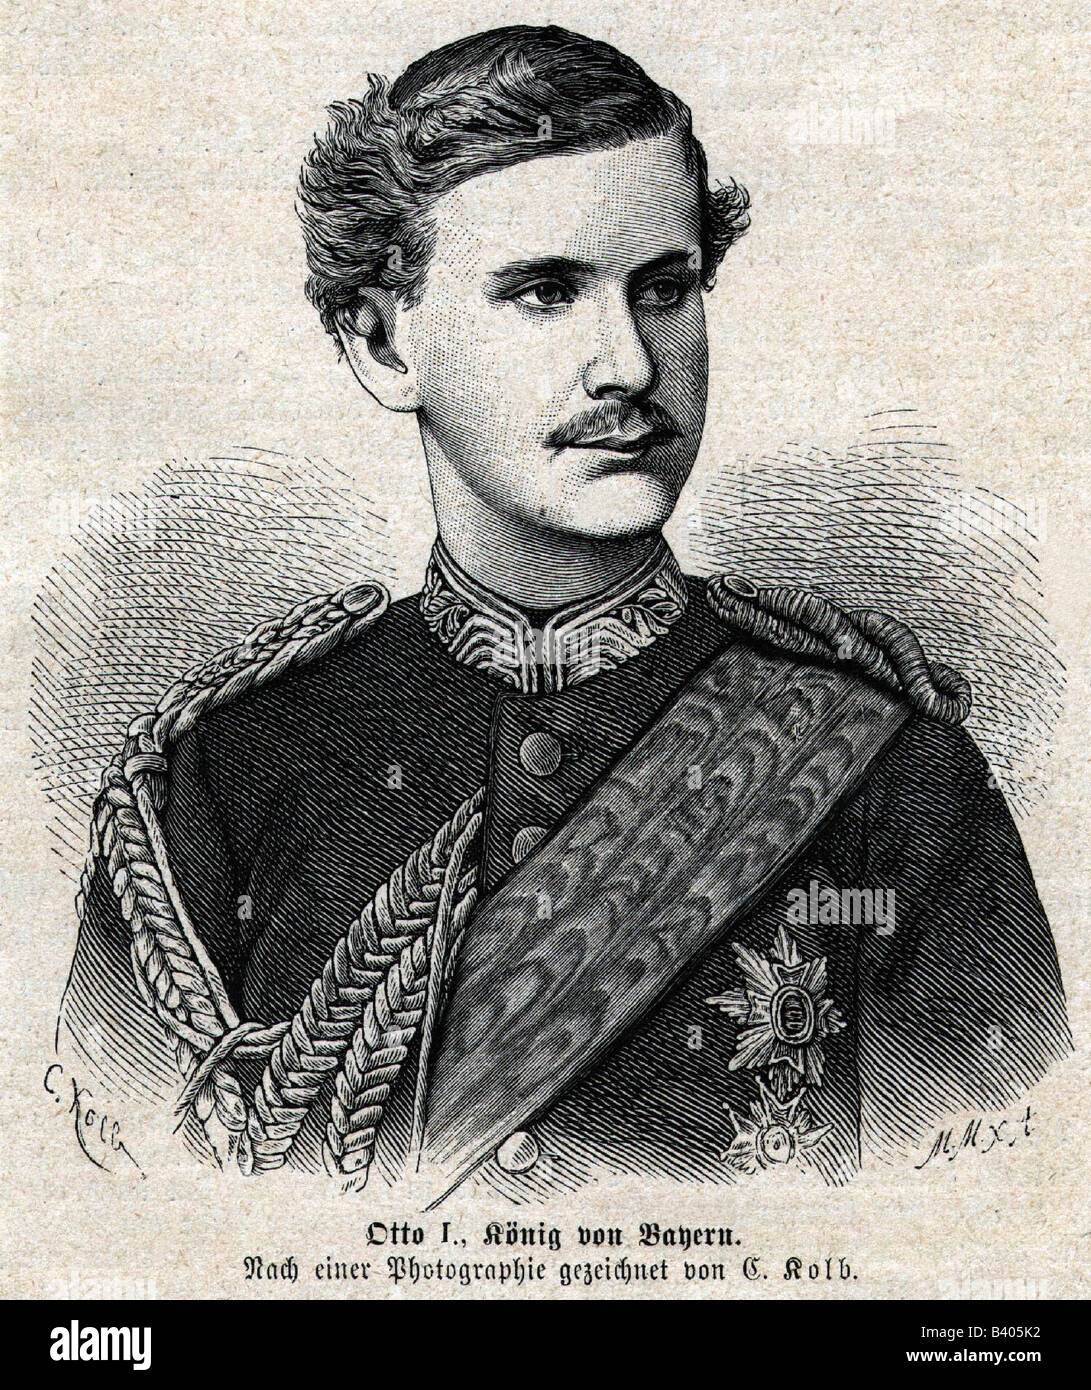 Otto I., 27.4.1848 - 11.10.1916, Rey de Baviera 13.6.1886 - 5.11.1913, retrato, grabado en madera después de dibujar por Carl Kolb, circa 1886, , Foto de stock